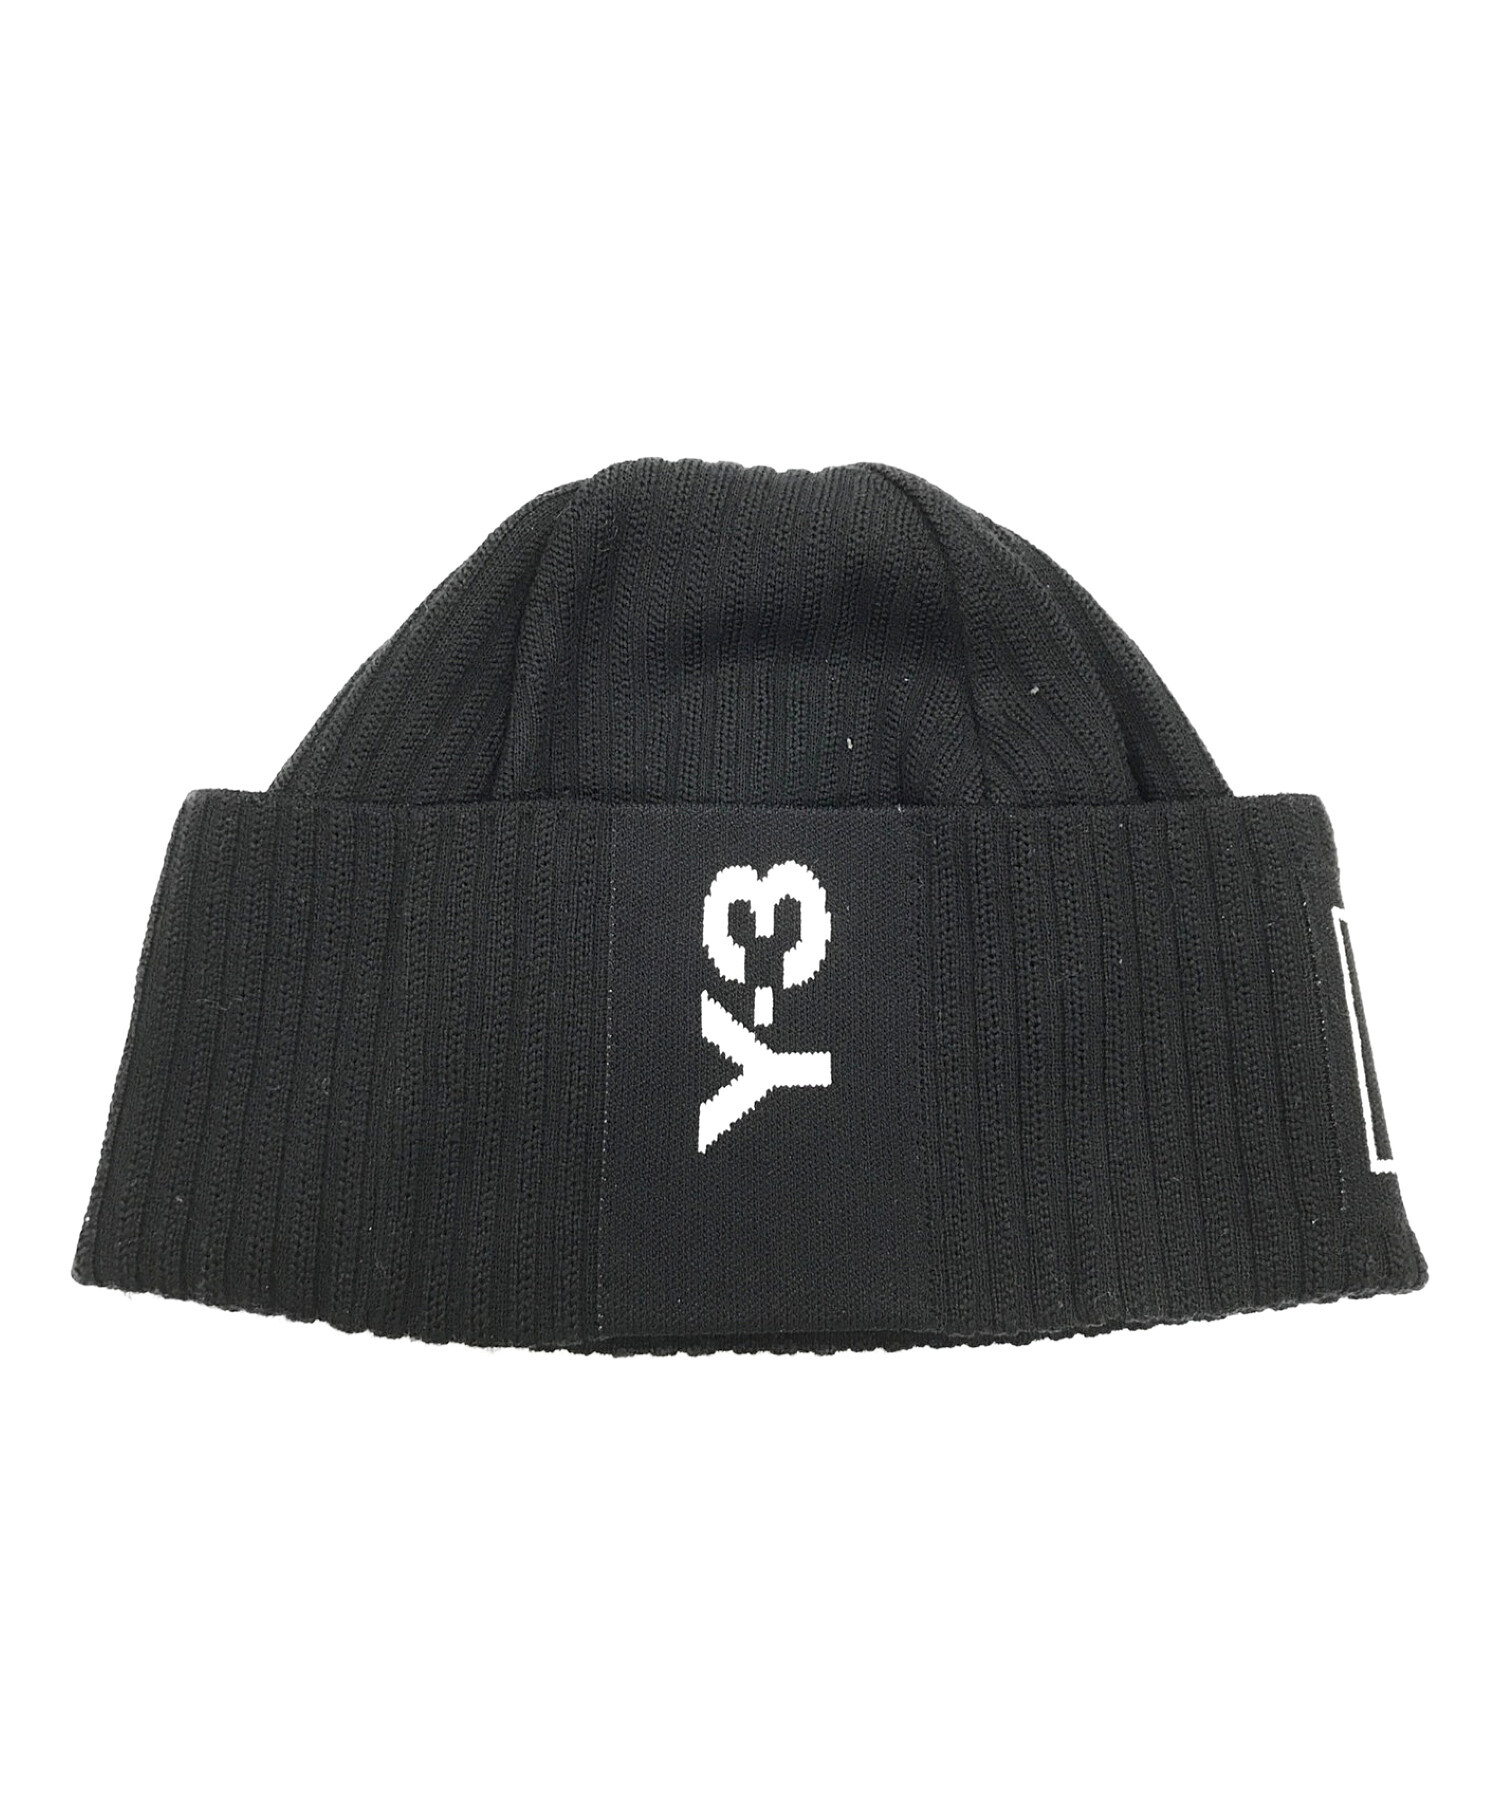 Y-3 (ワイスリー) ニット帽 ブラック サイズ:実寸サイズにてご確認ください。